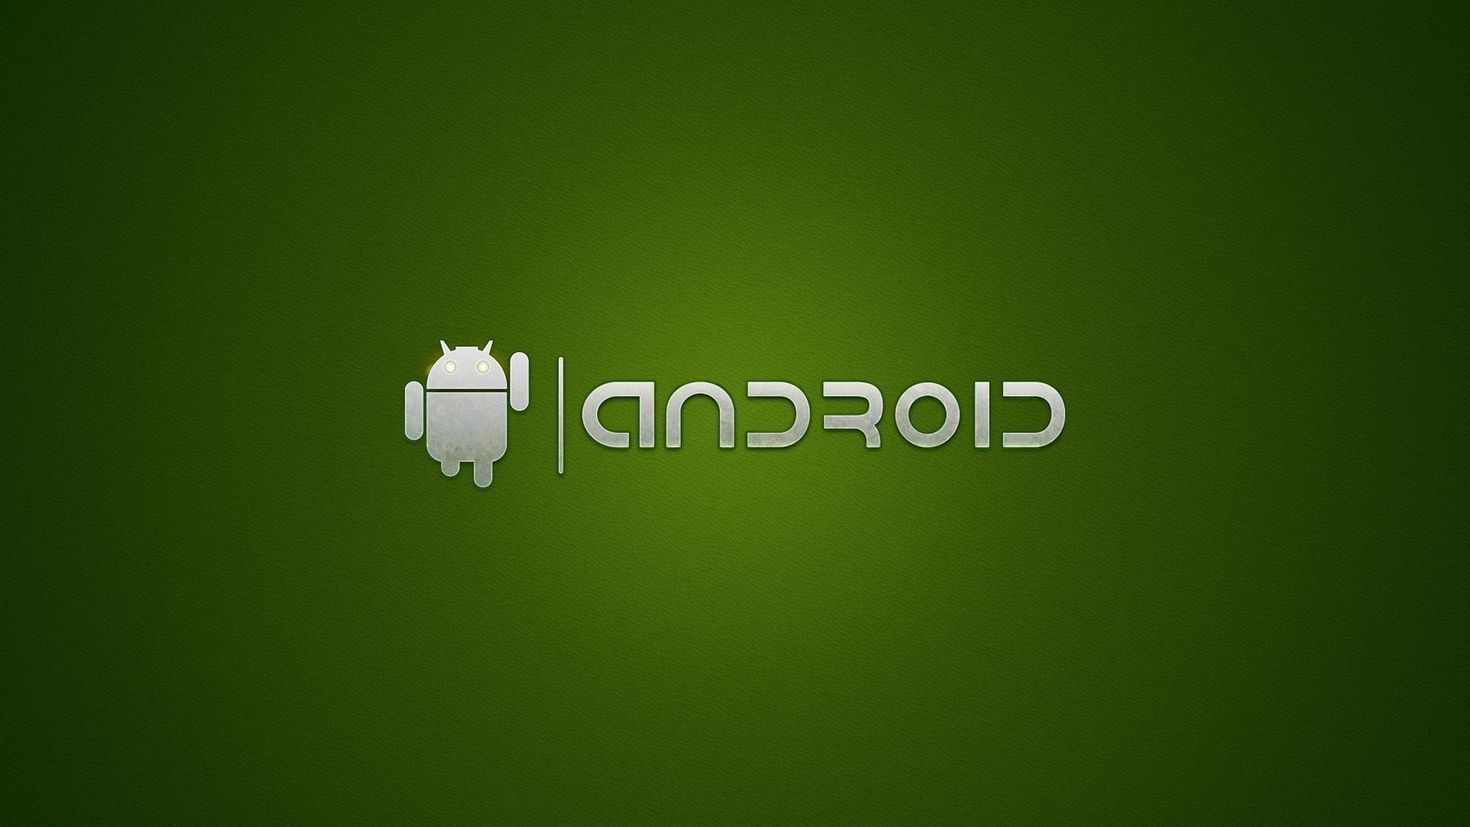 Обои андроида 10. Логотип андроид. Картинки на андроид. Заставки на Android. Обои на андроид с надписями.